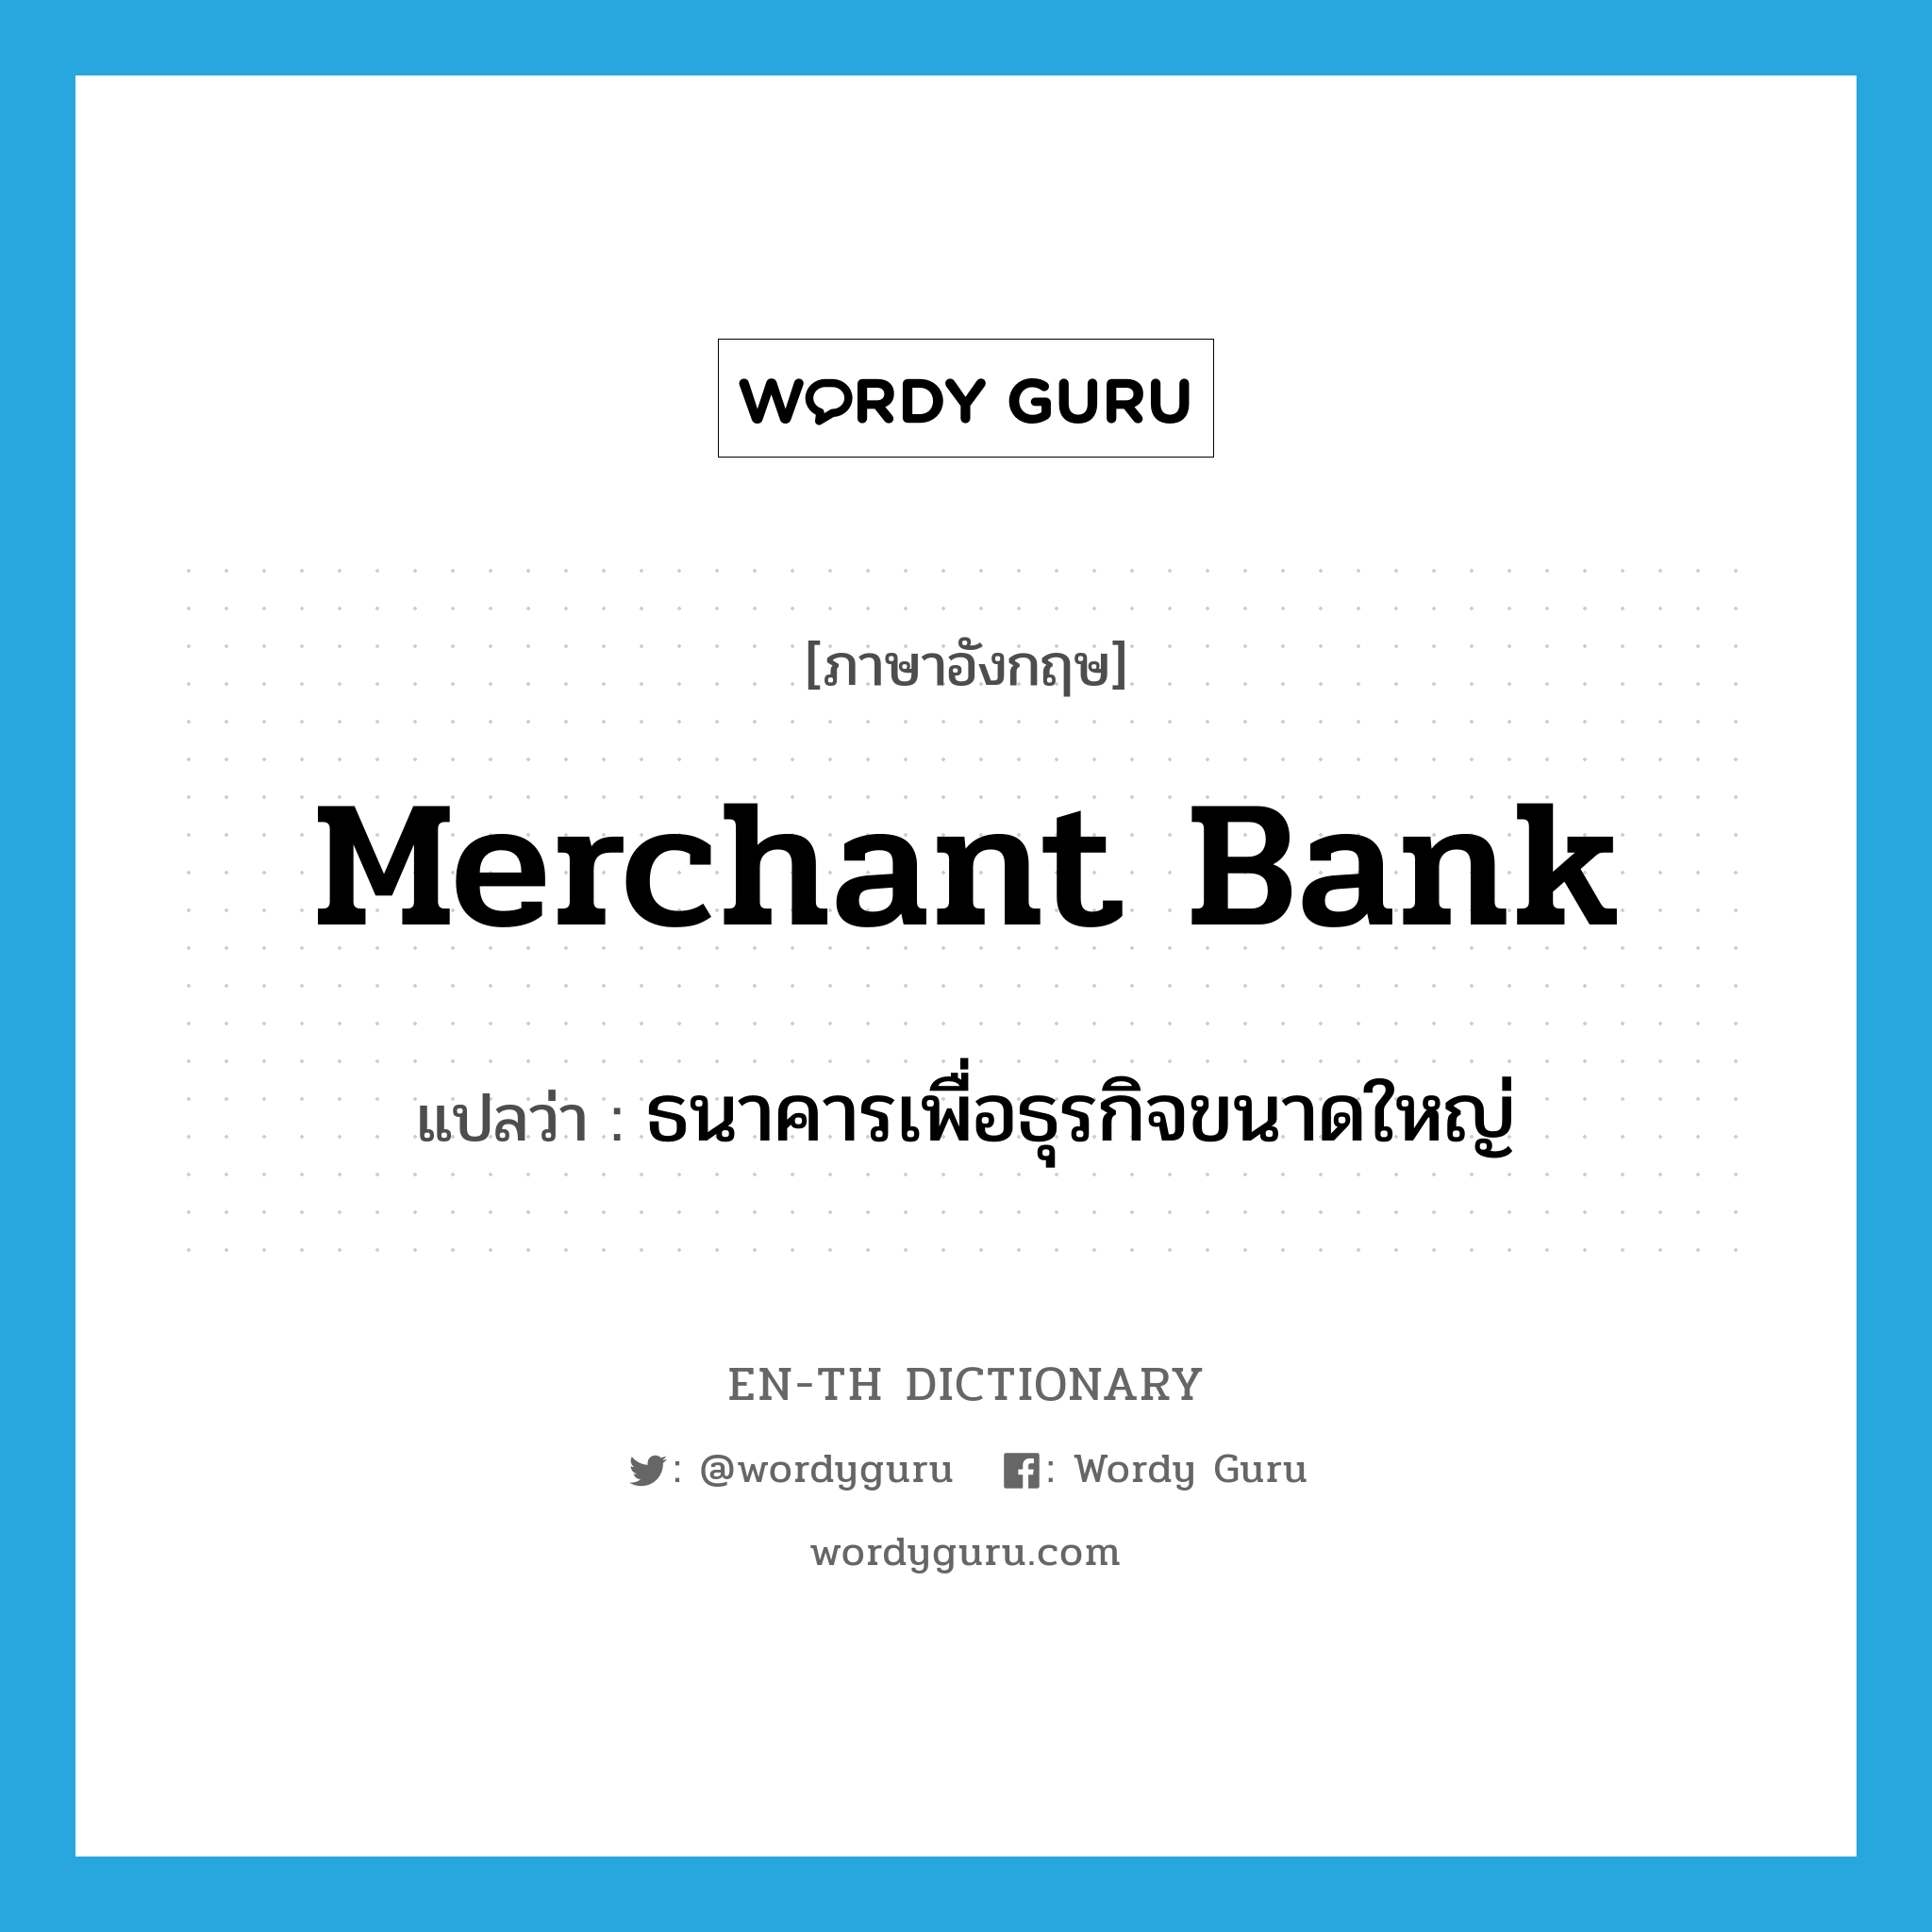 merchant bank แปลว่า?, คำศัพท์ภาษาอังกฤษ merchant bank แปลว่า ธนาคารเพื่อธุรกิจขนาดใหญ่ ประเภท N หมวด N